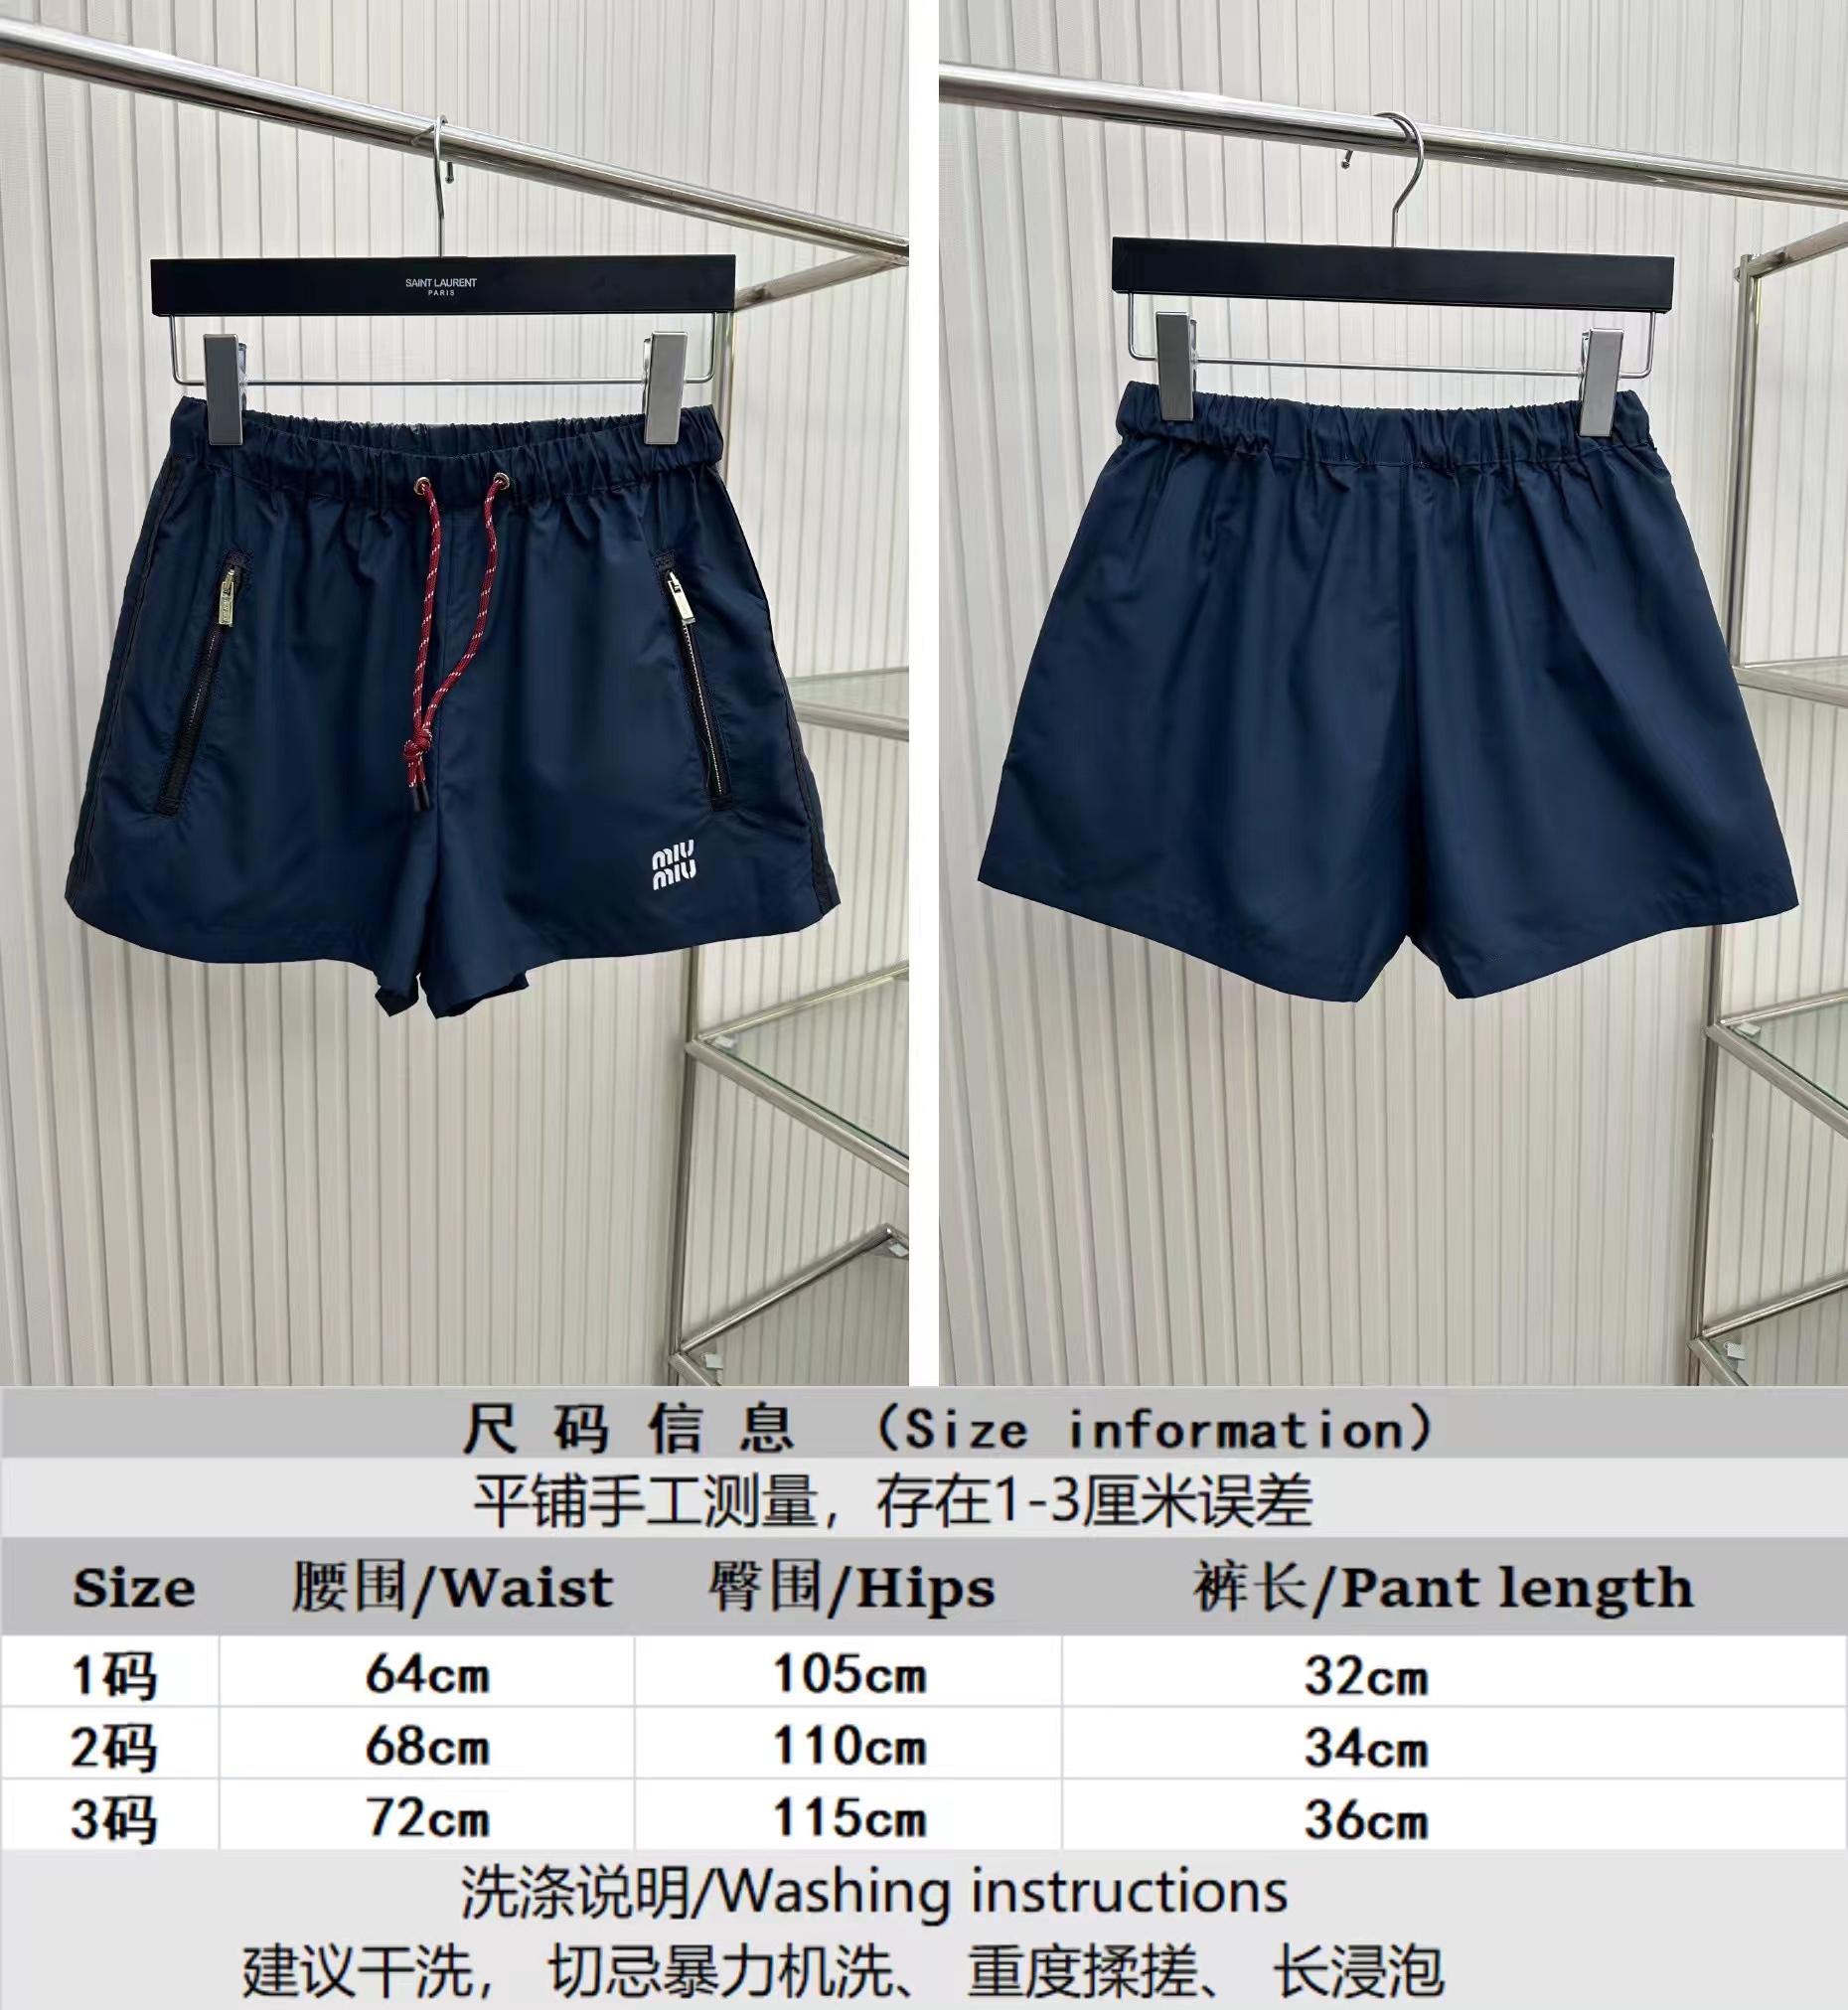 MiuMiu Clothing Shorts